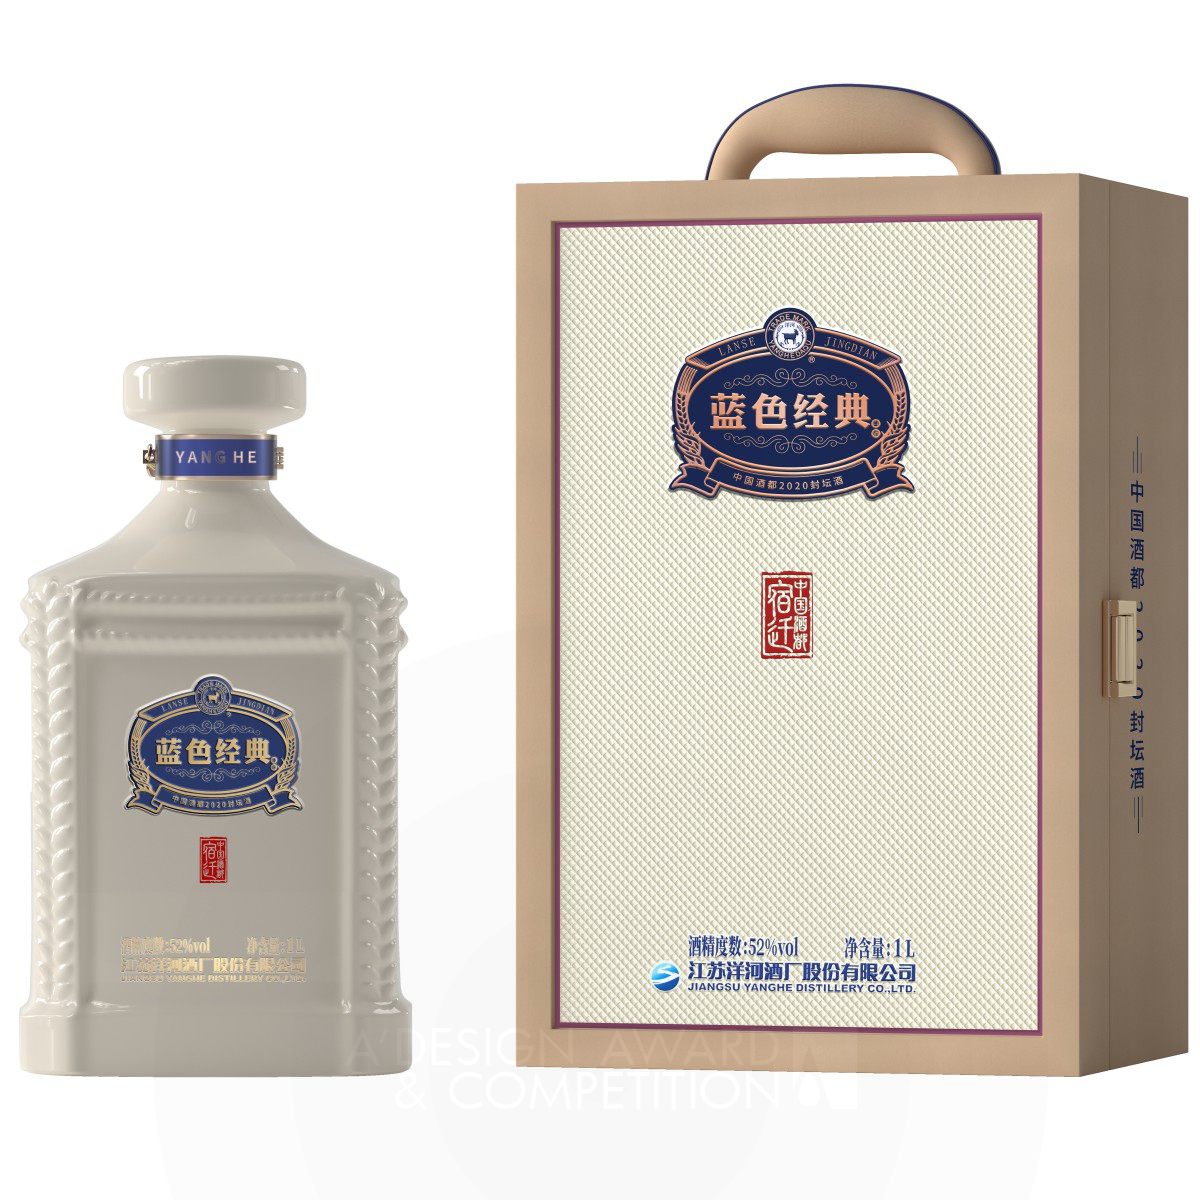 Classic Blue Sealed Baijiu Alcoholic Beverage Packaging by Wen Liu